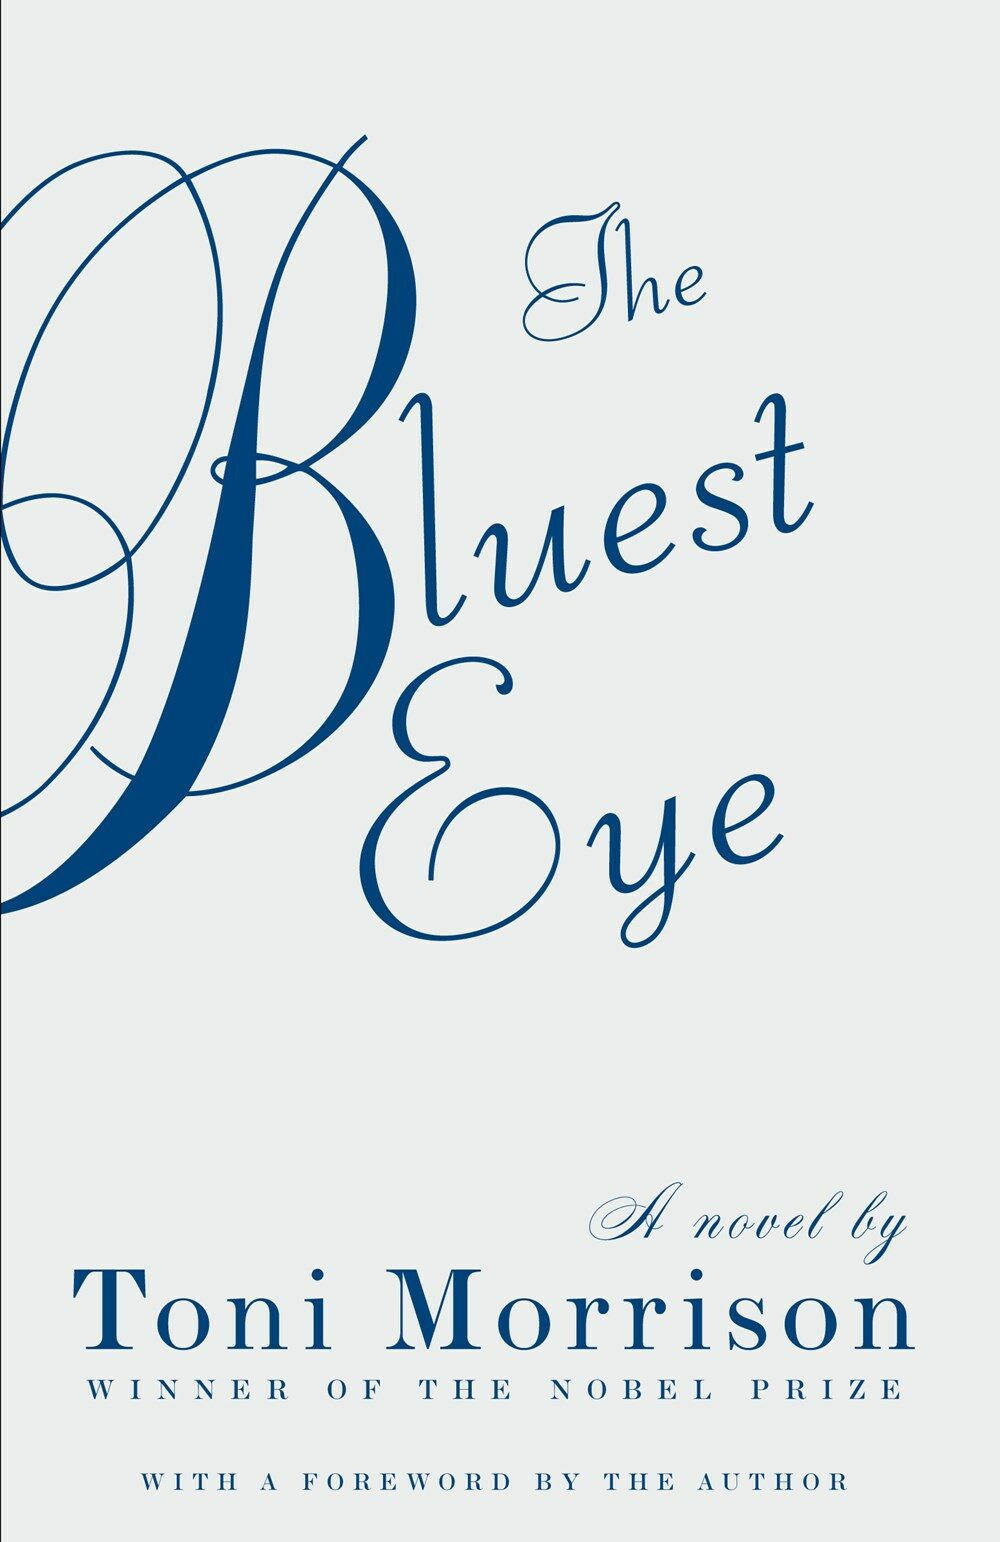 The Bluest Eye (Paperback)